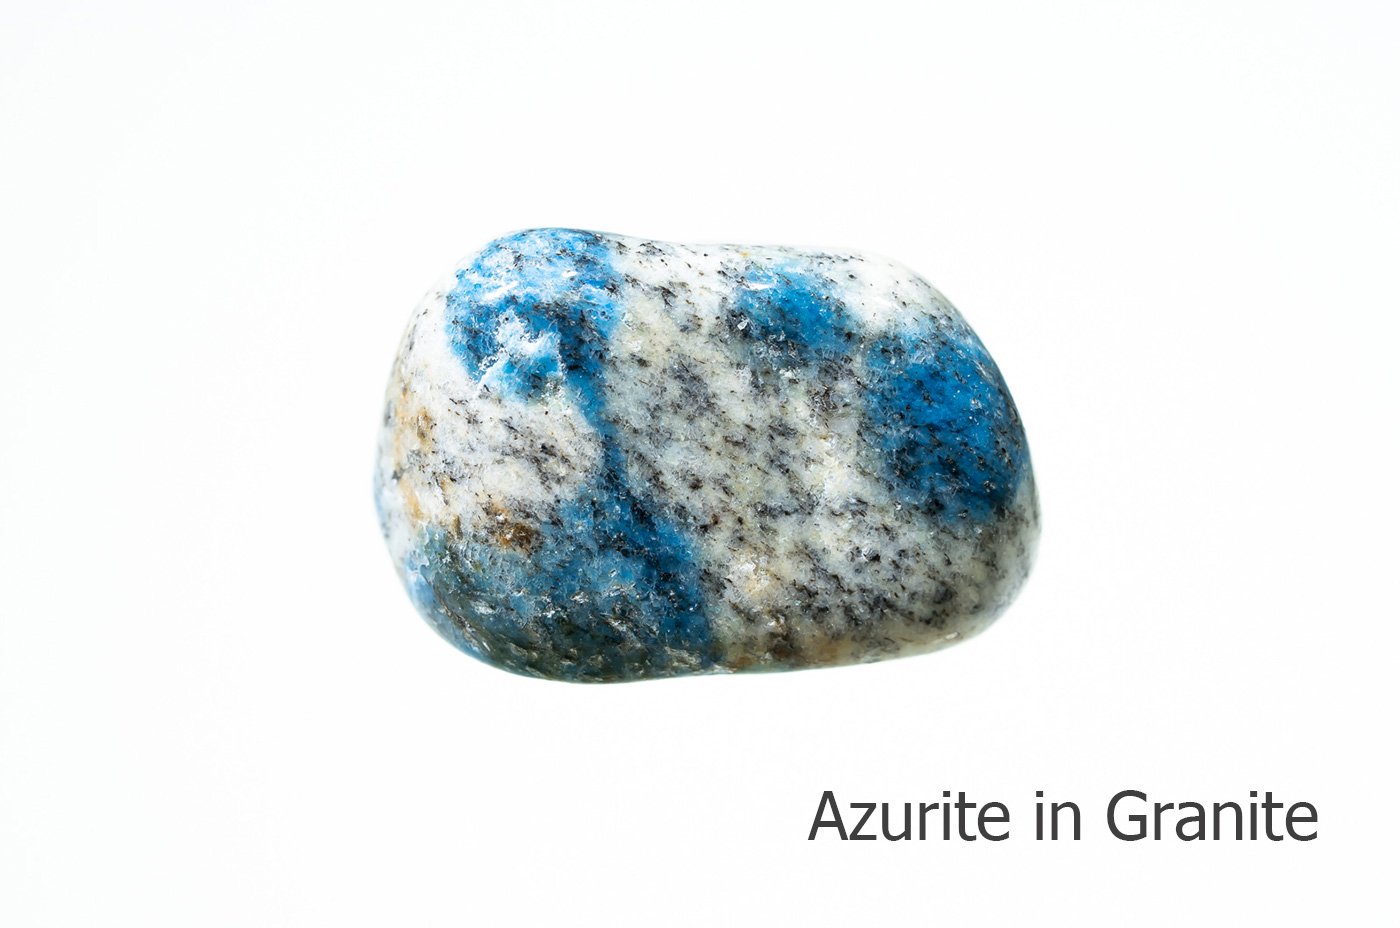 お守り石 アズライト イン グラナイト お守り石 K2 Mountain Pakistan Azurite In Granite